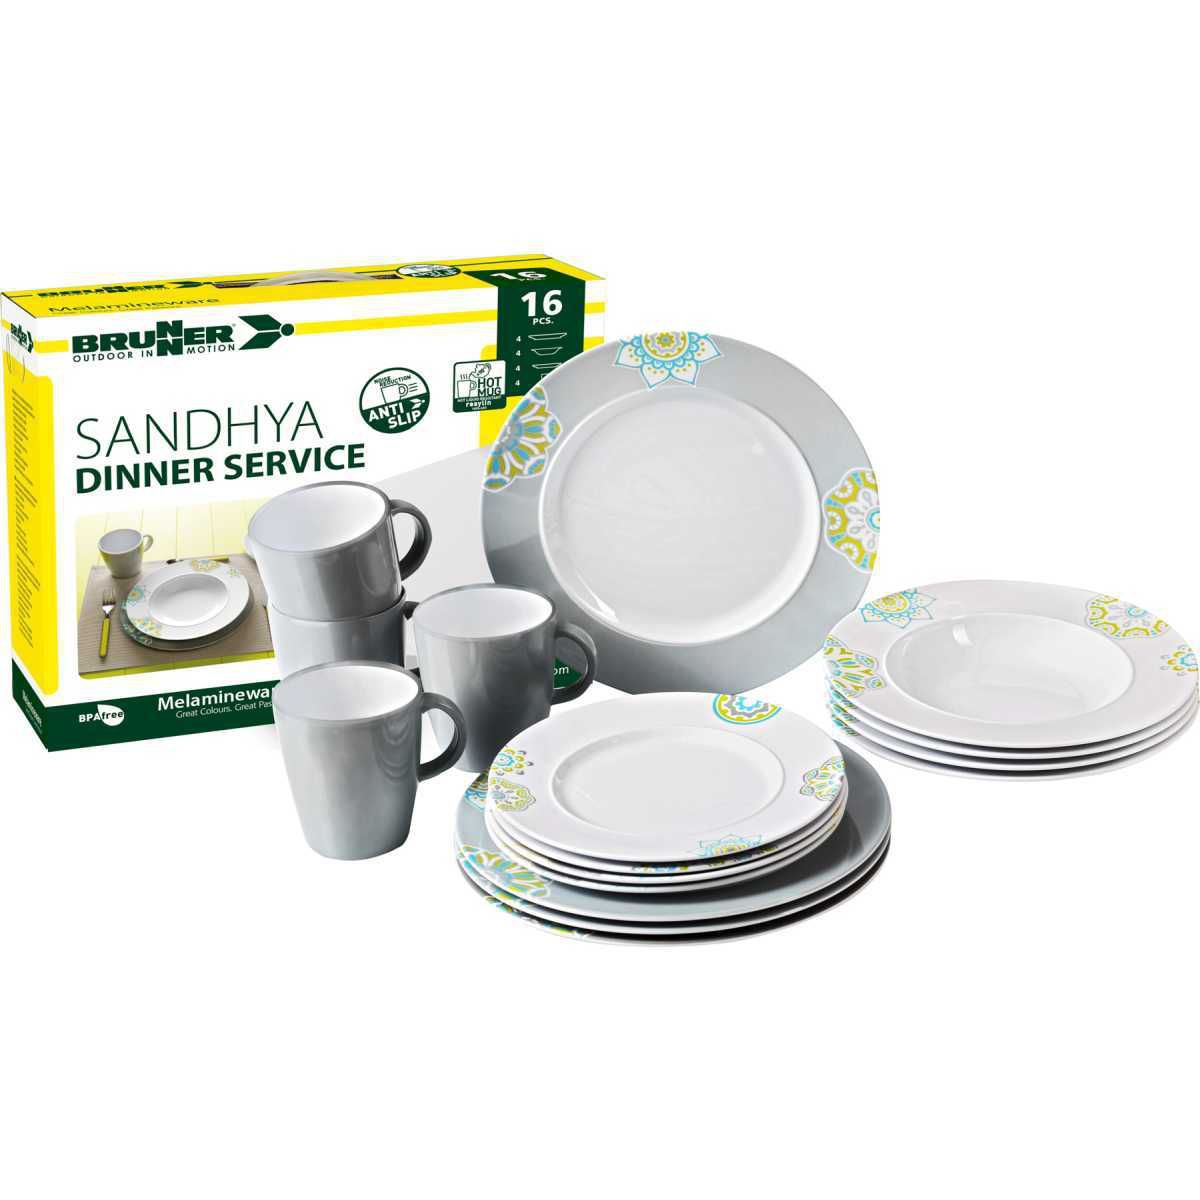 BRUNNER Sandhya Dinner Service Geschirrset 16-tlg - 0830151N.C2E